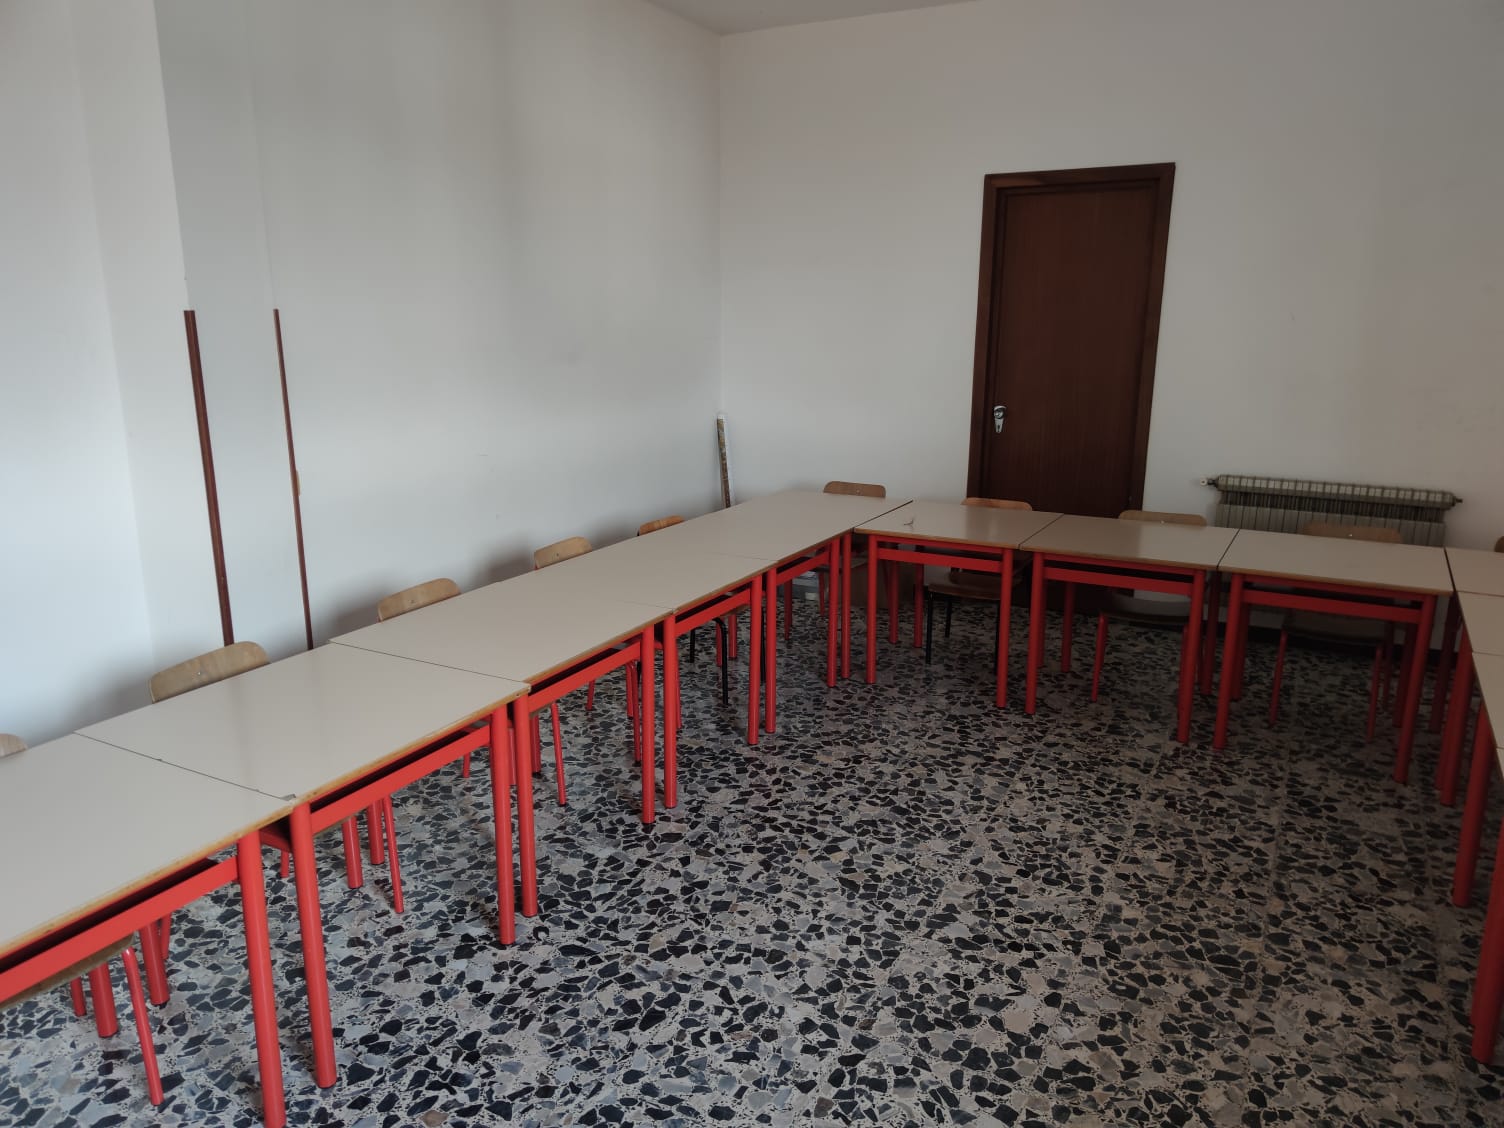  ‣ adn24 laigueglia (sv) per pasqua la sorpresa più bella, una nuova scuola per i bambini della cittadina rivierasca